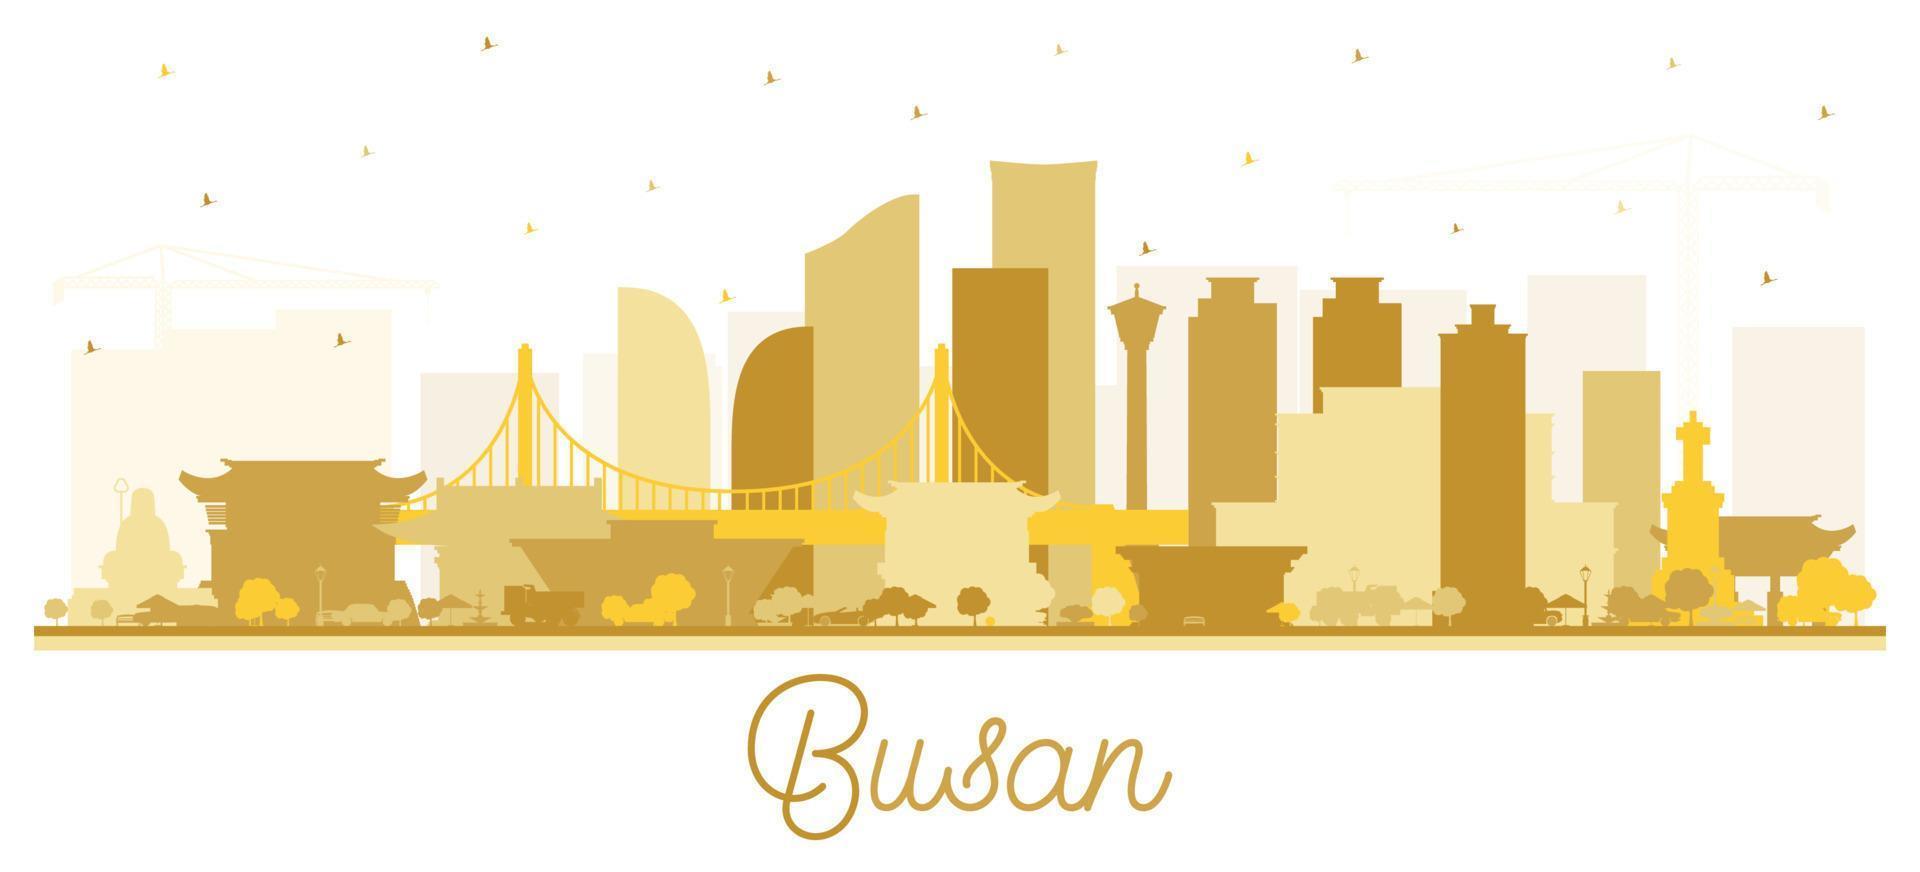 busan südkorea city skyline silhouette mit goldenen gebäuden isoliert auf weiß. vektor